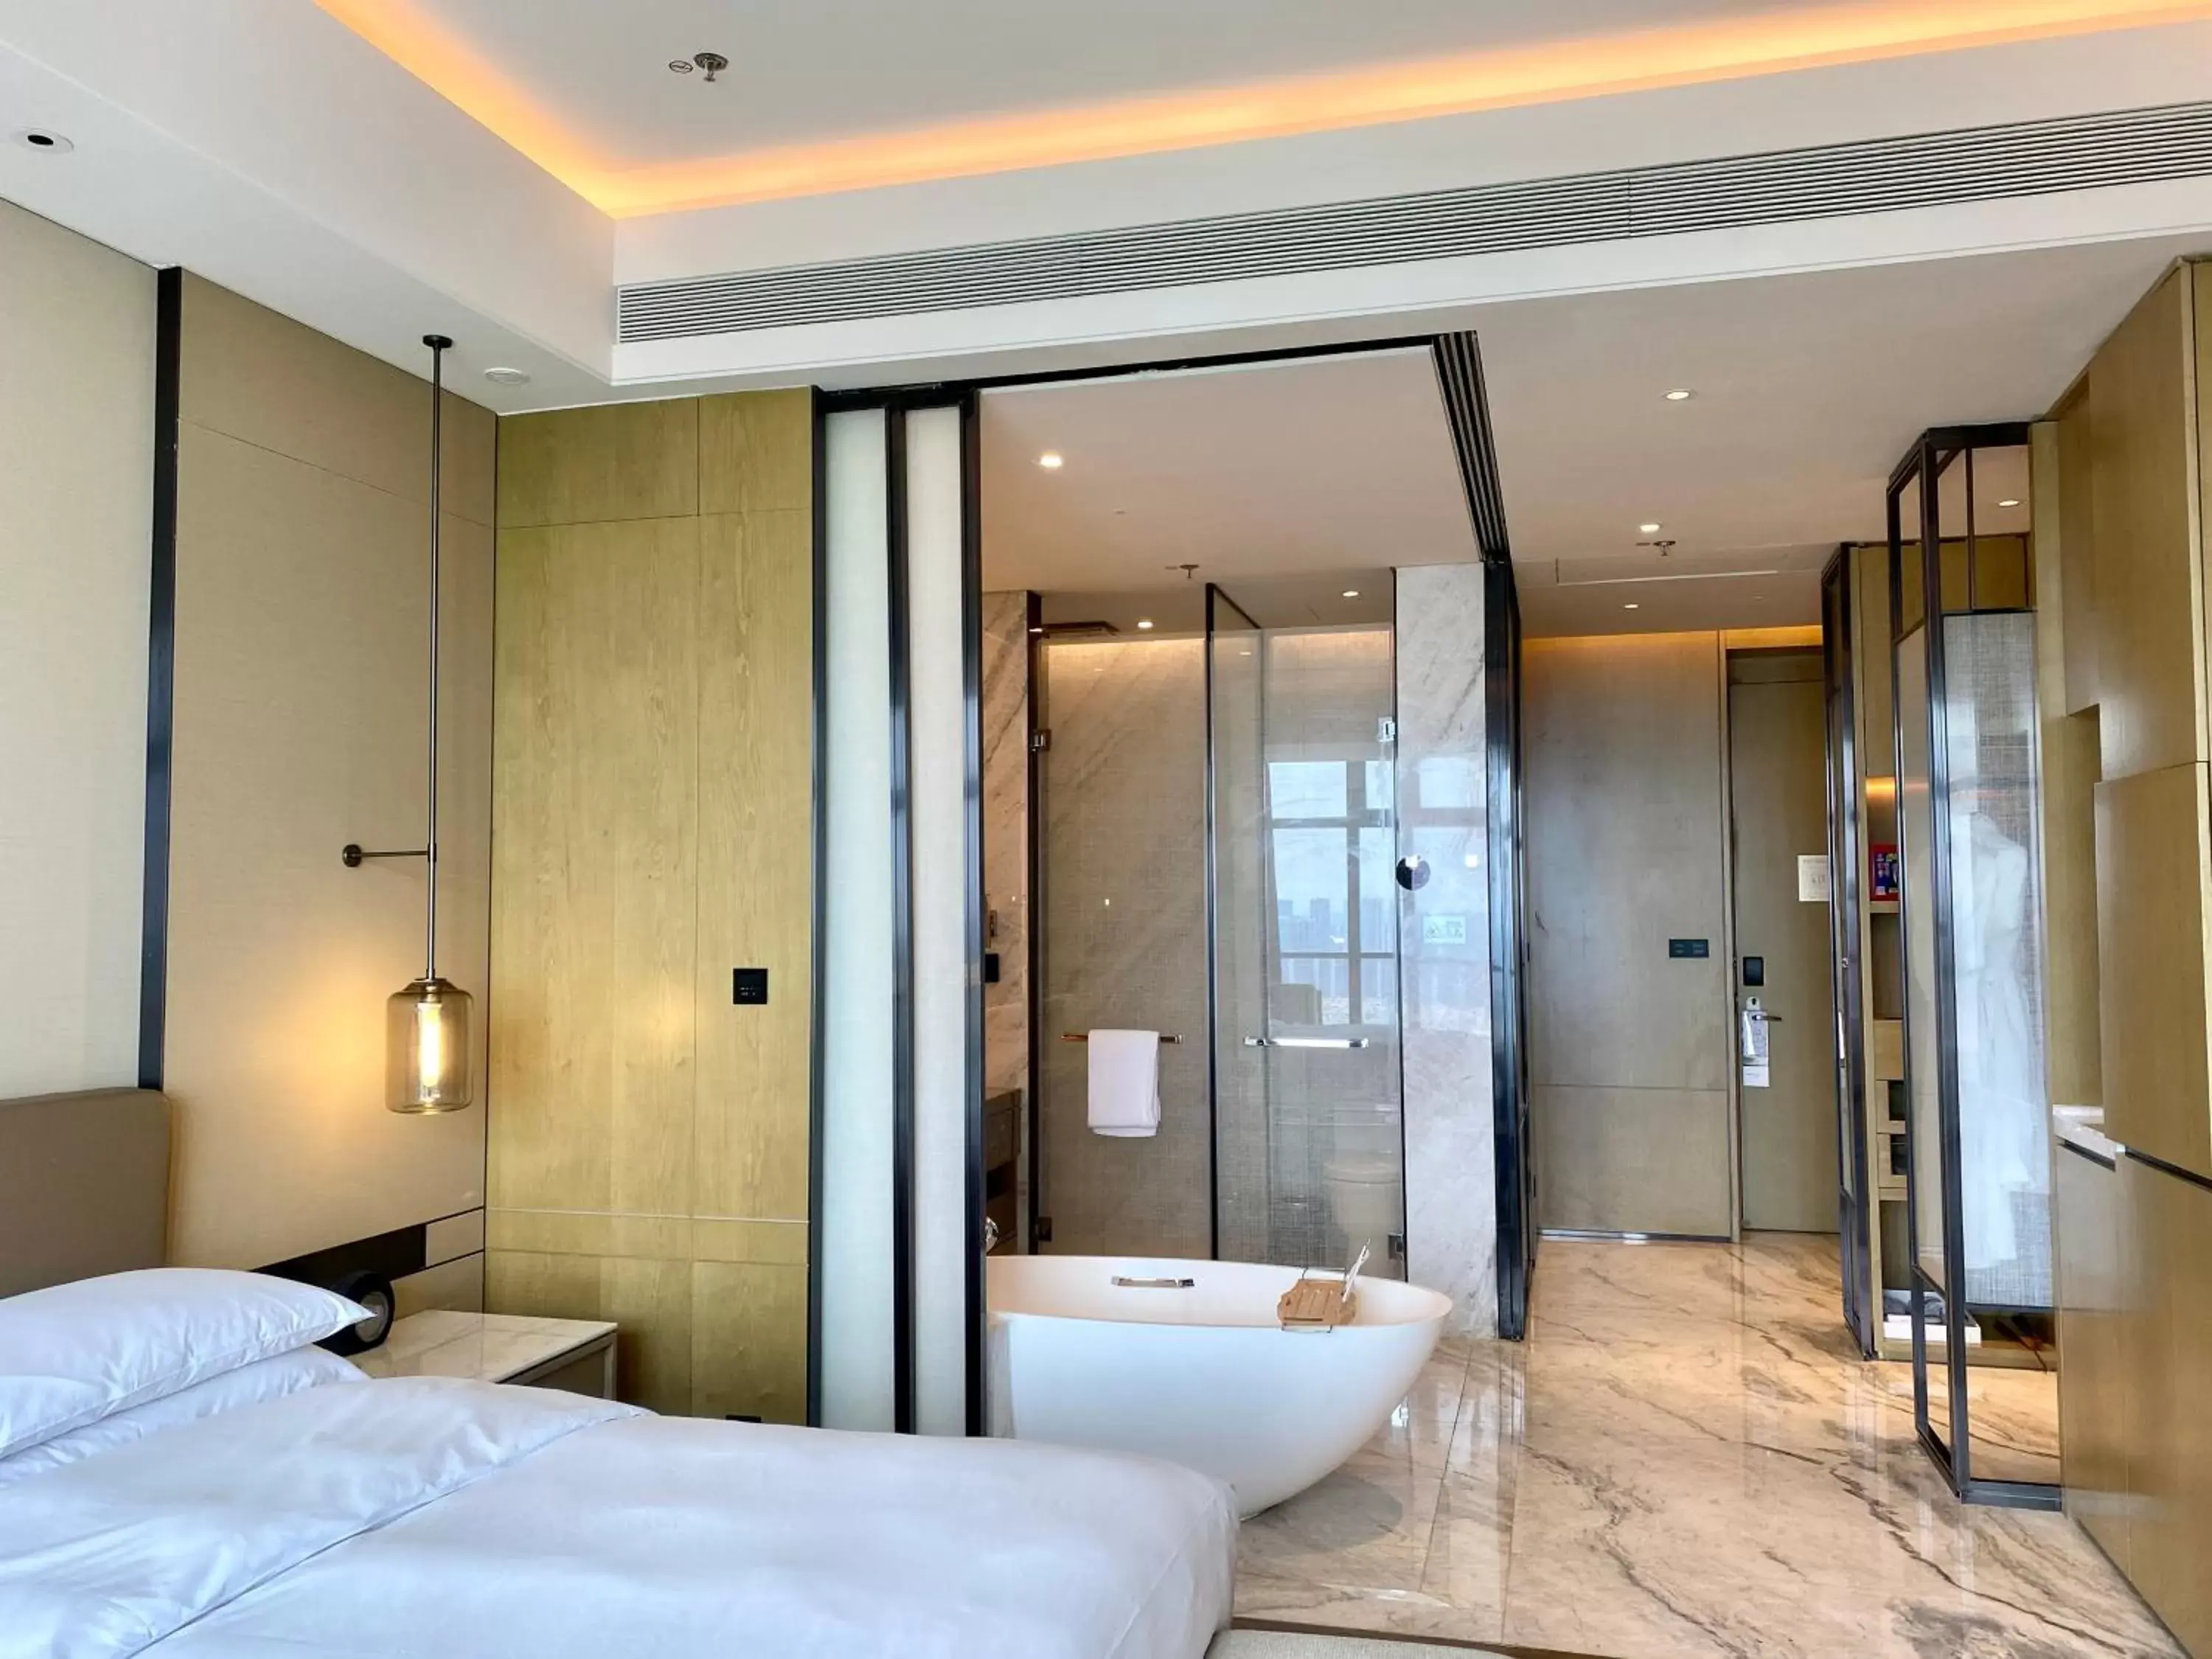 Property building, Bathroom in Zhangjiagang Marriott Hotel